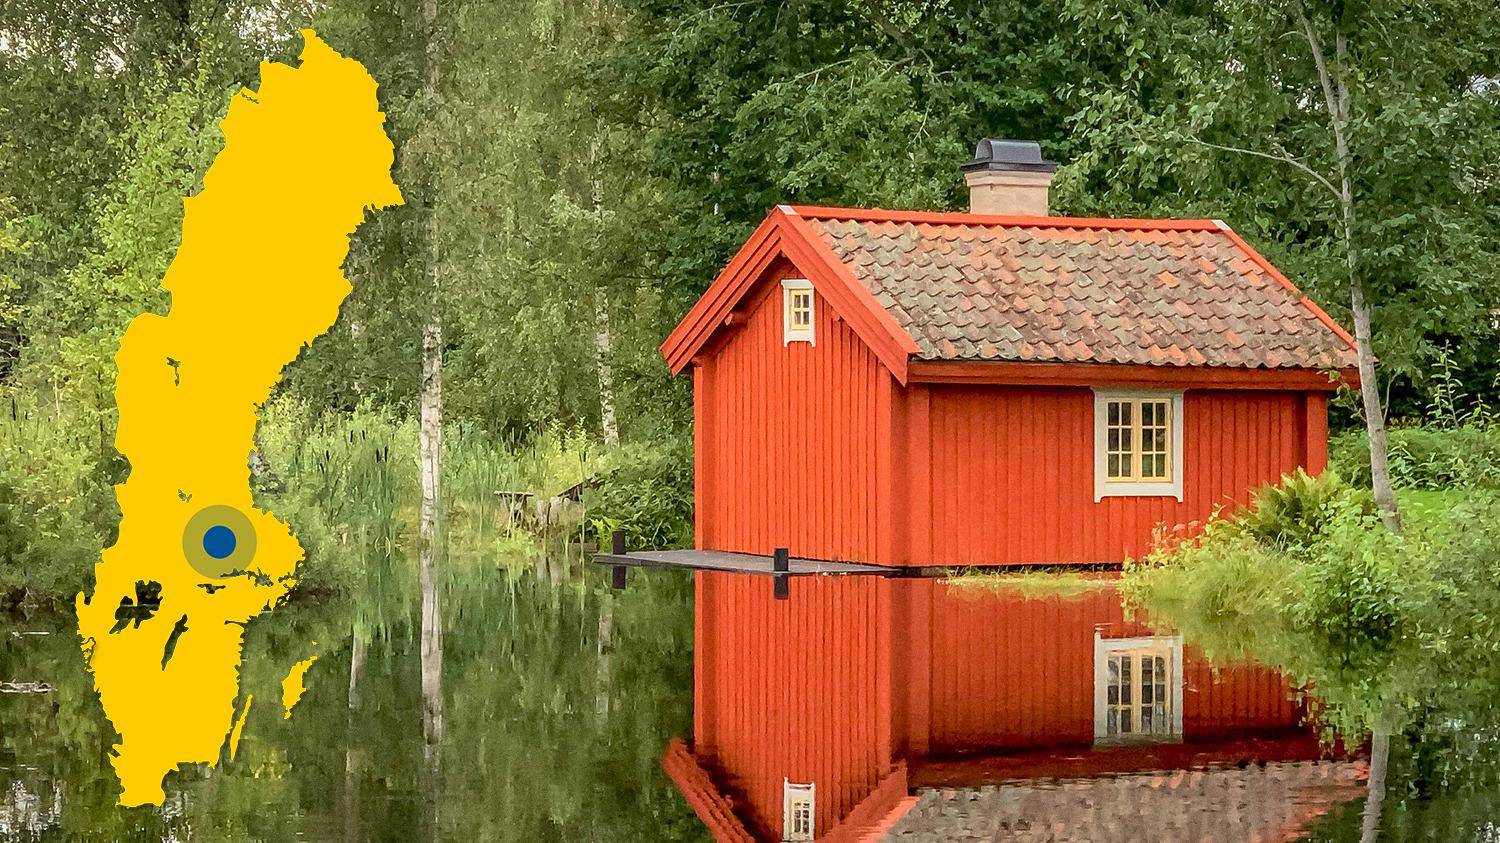 Aan de rand van het water staat een rood houten huis met een rood pannendak. Het huis wordt weerspiegeld in het water. De afbeelding toont een gele kaart van Zweden met een markering die de locatie van Norberg aangeeft.